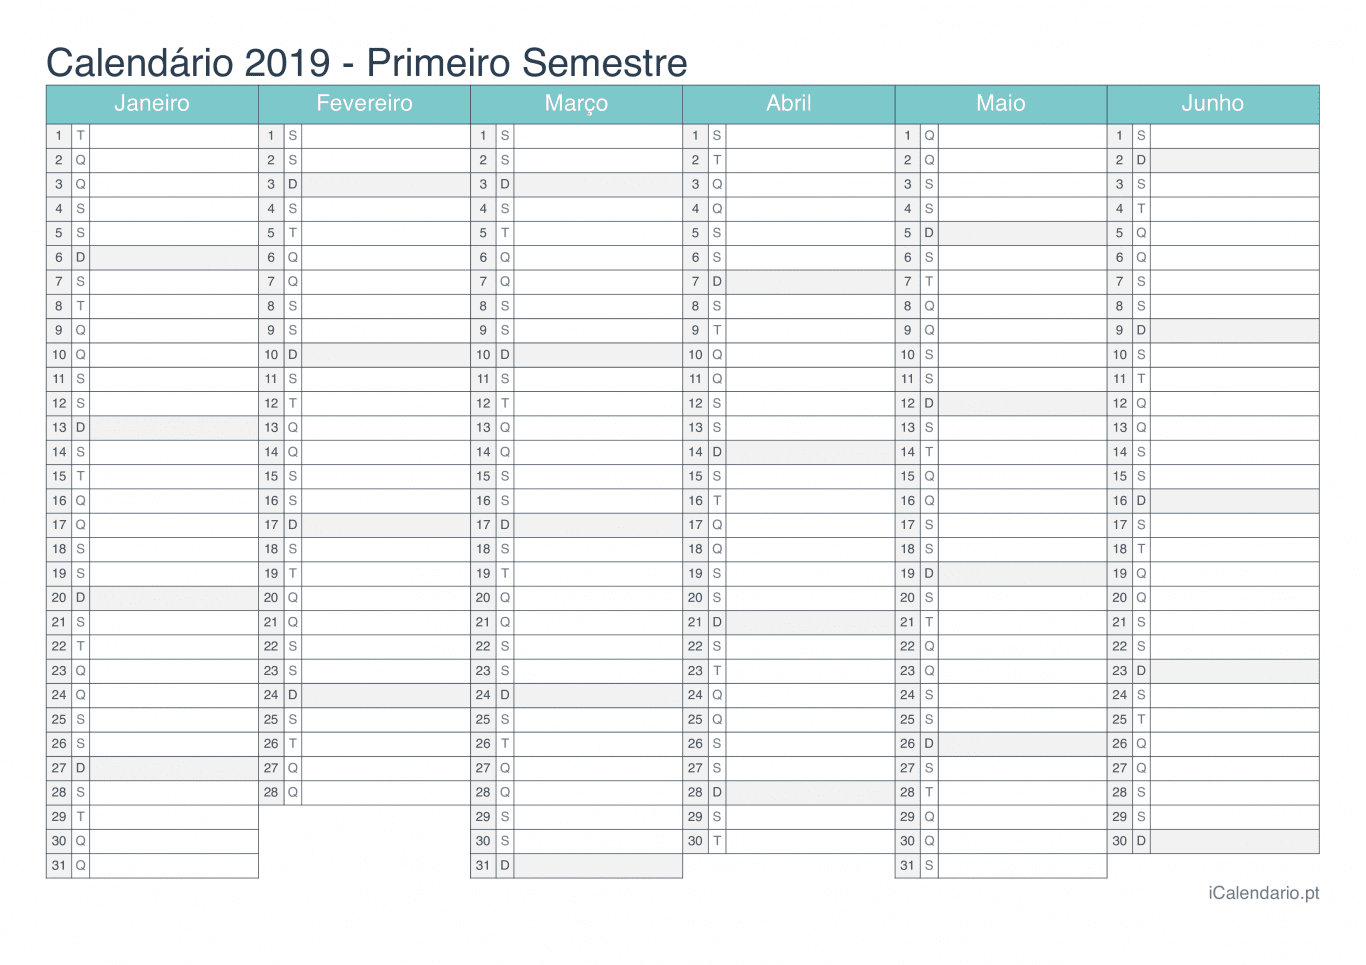 Calendário por semestre 2019 - Turquesa